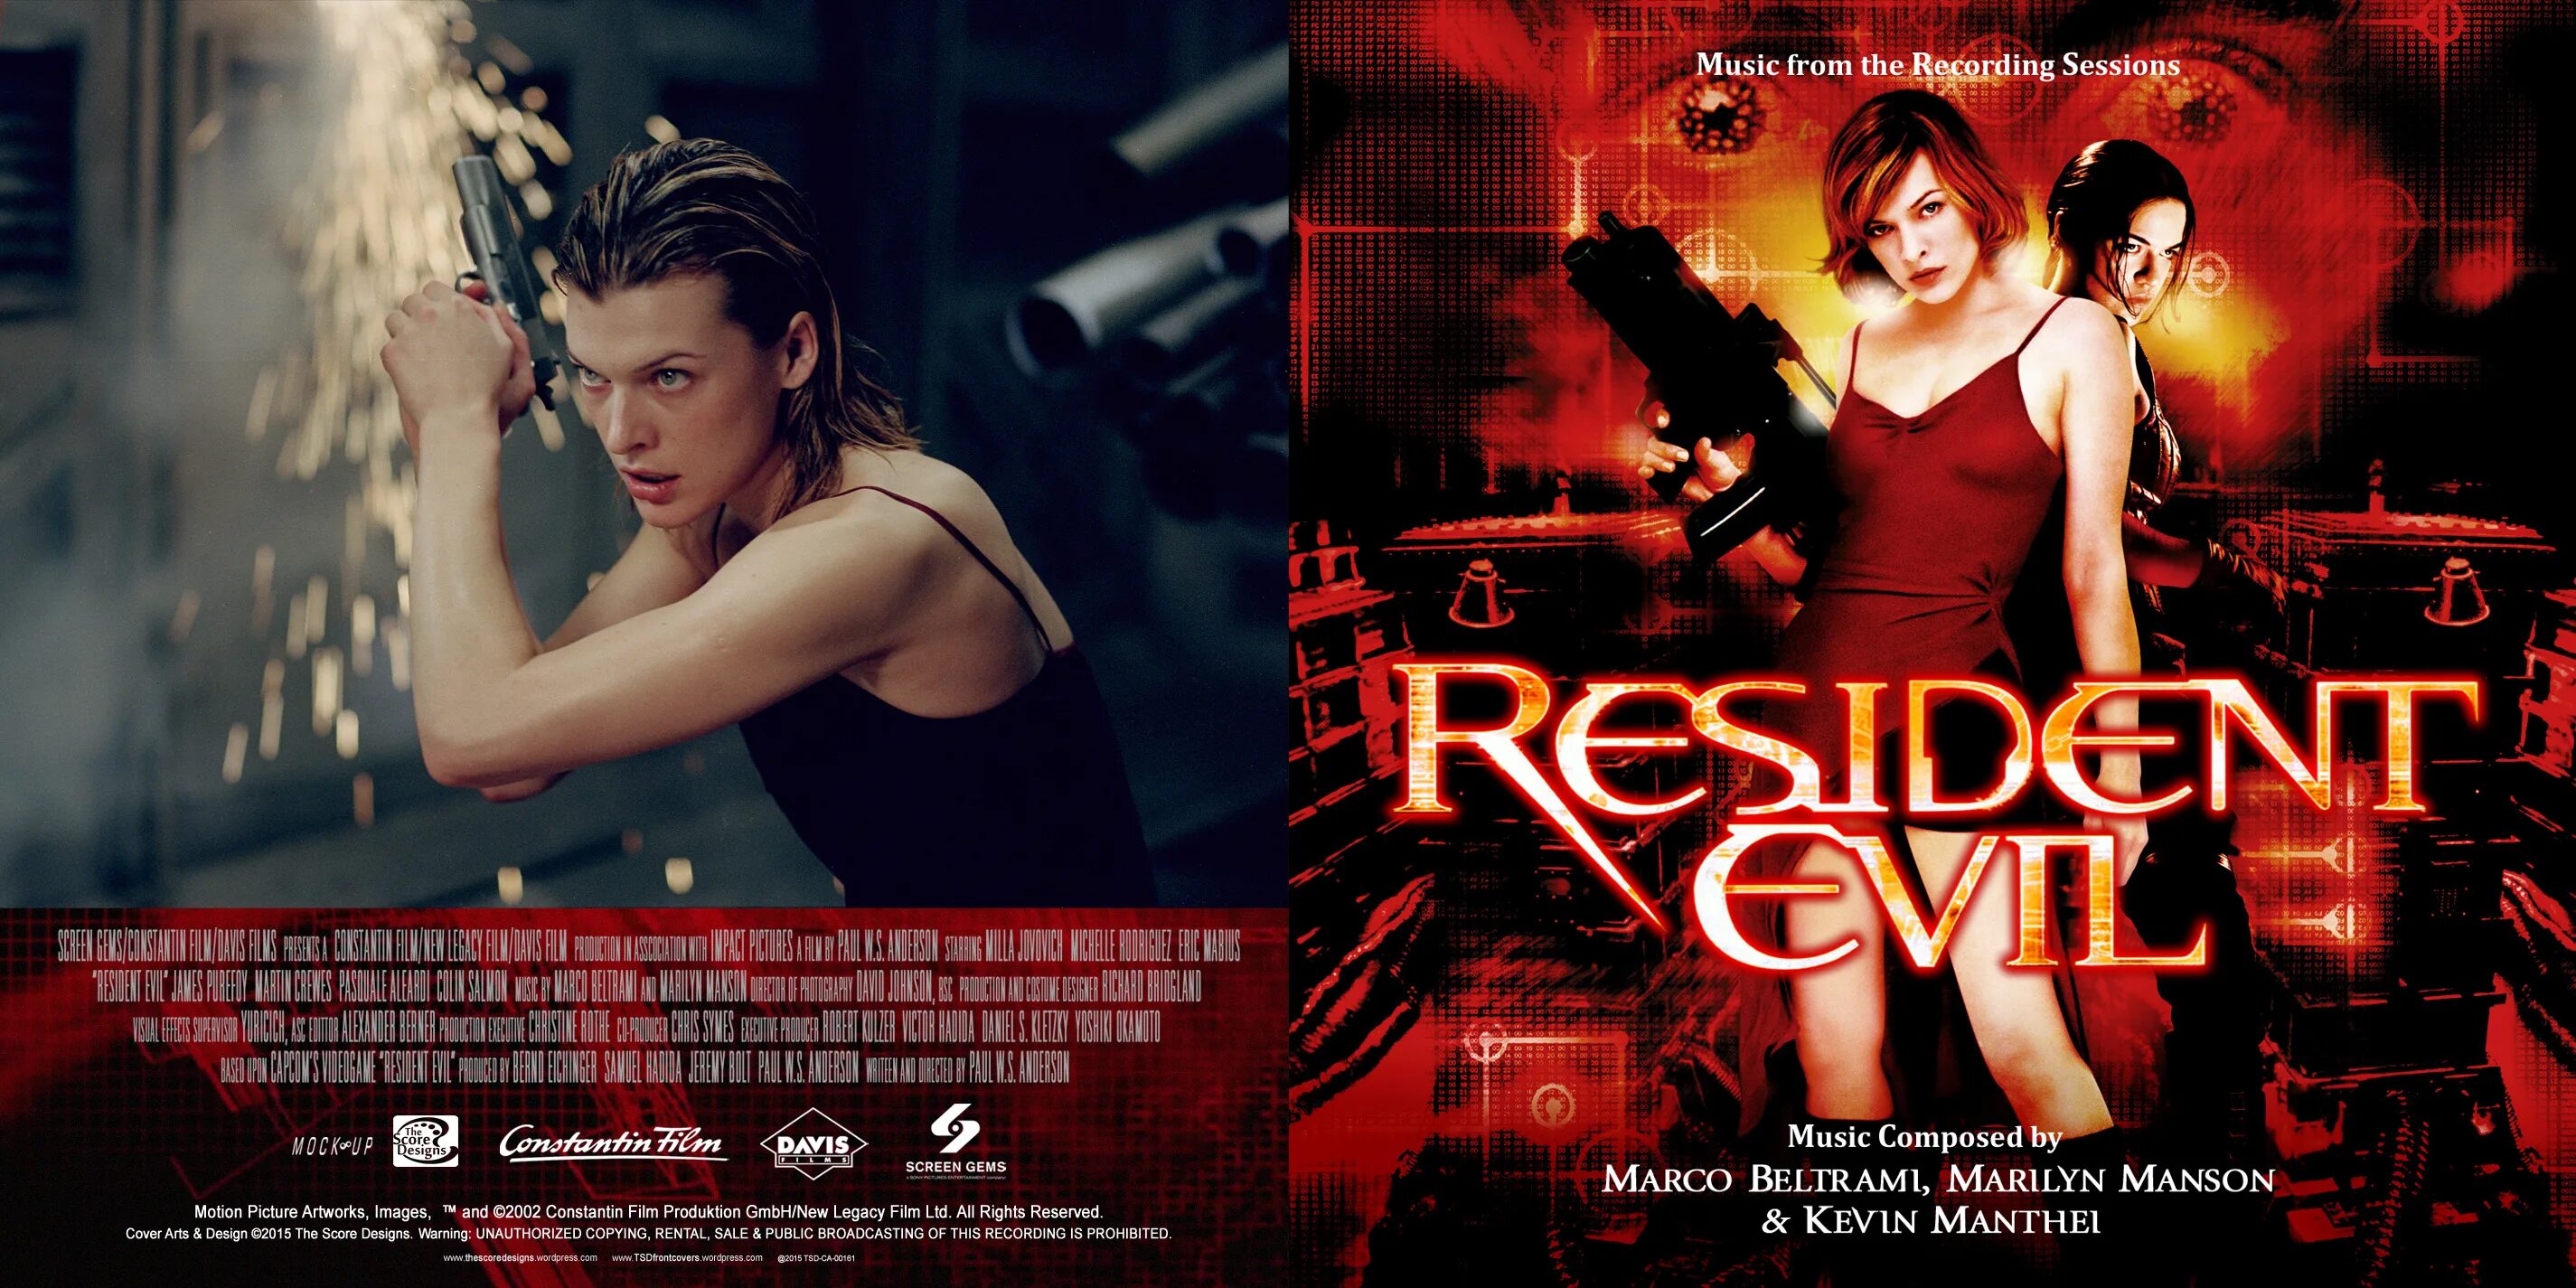 Resident Evil Manson. Обитель зла 2002 Постер. Resident Evil 2002 recording session score. Marilyn manson resident evil